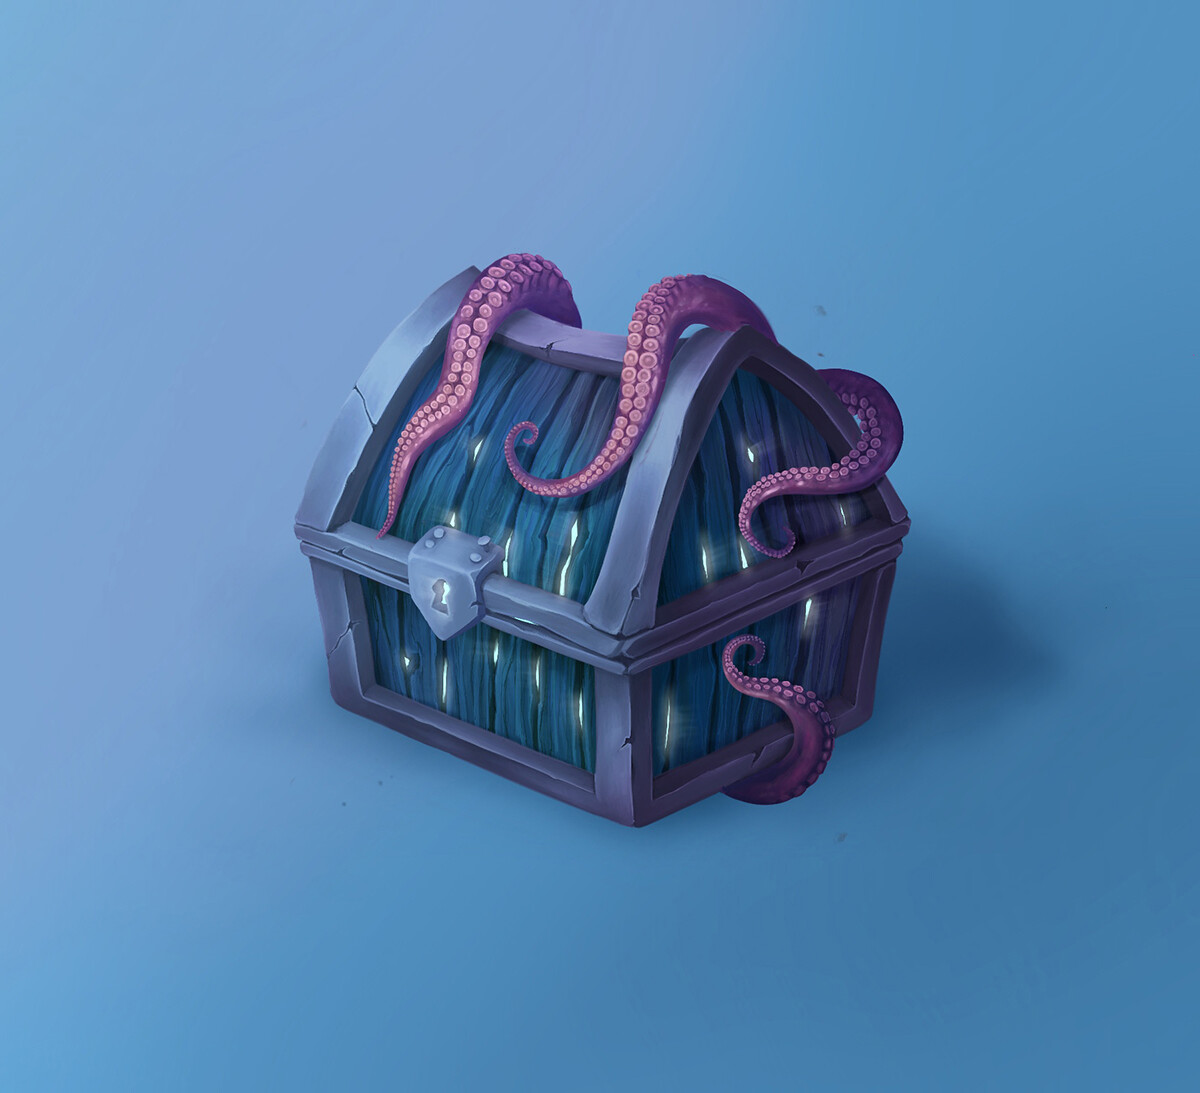 ArtStation - Squid treasure chest